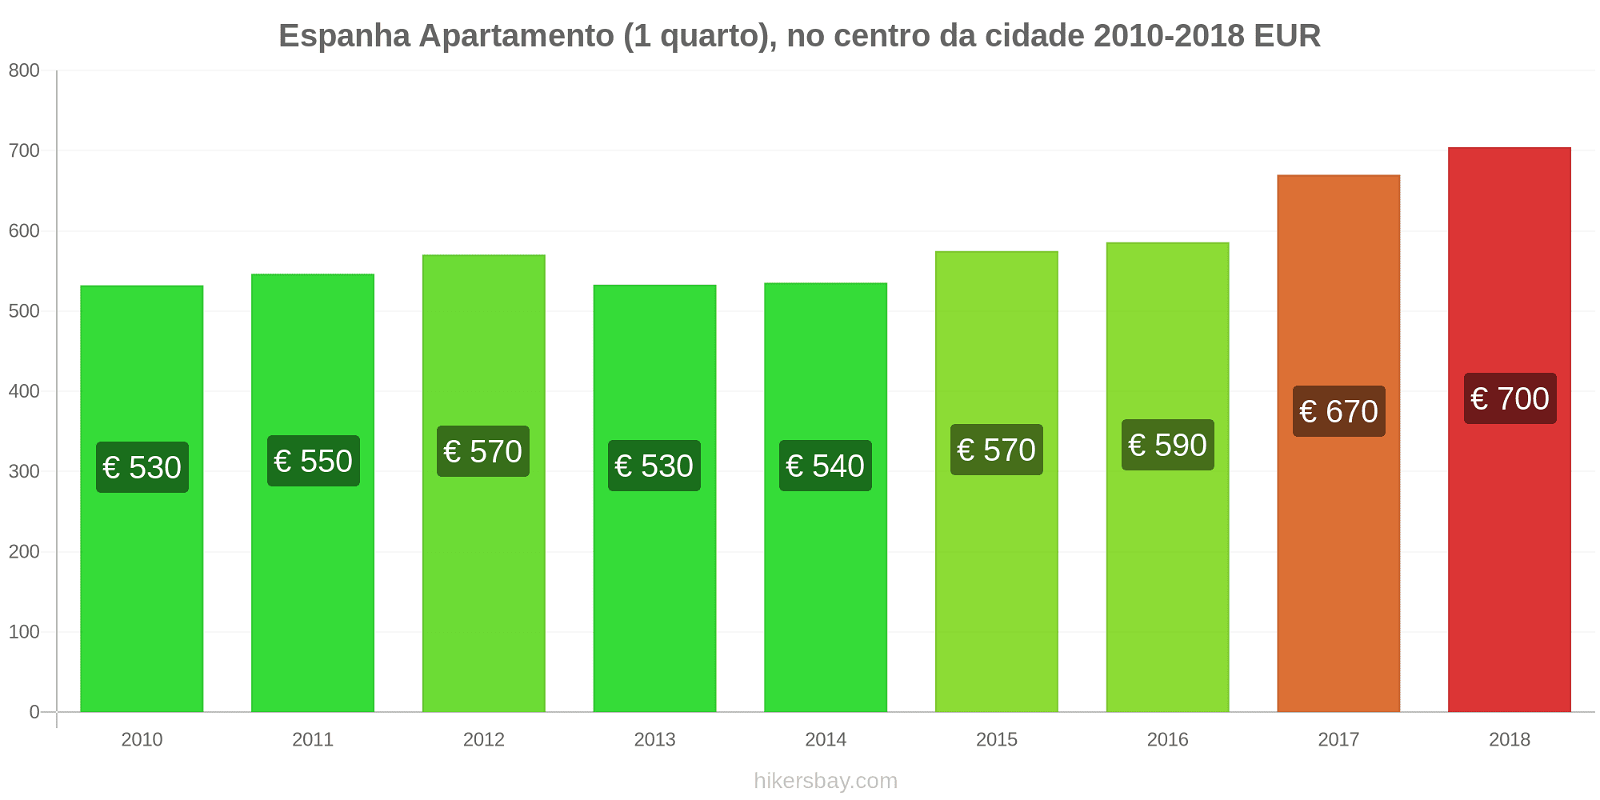 Espanha mudanças de preços Apartamento (1 quarto) no centro da cidade hikersbay.com